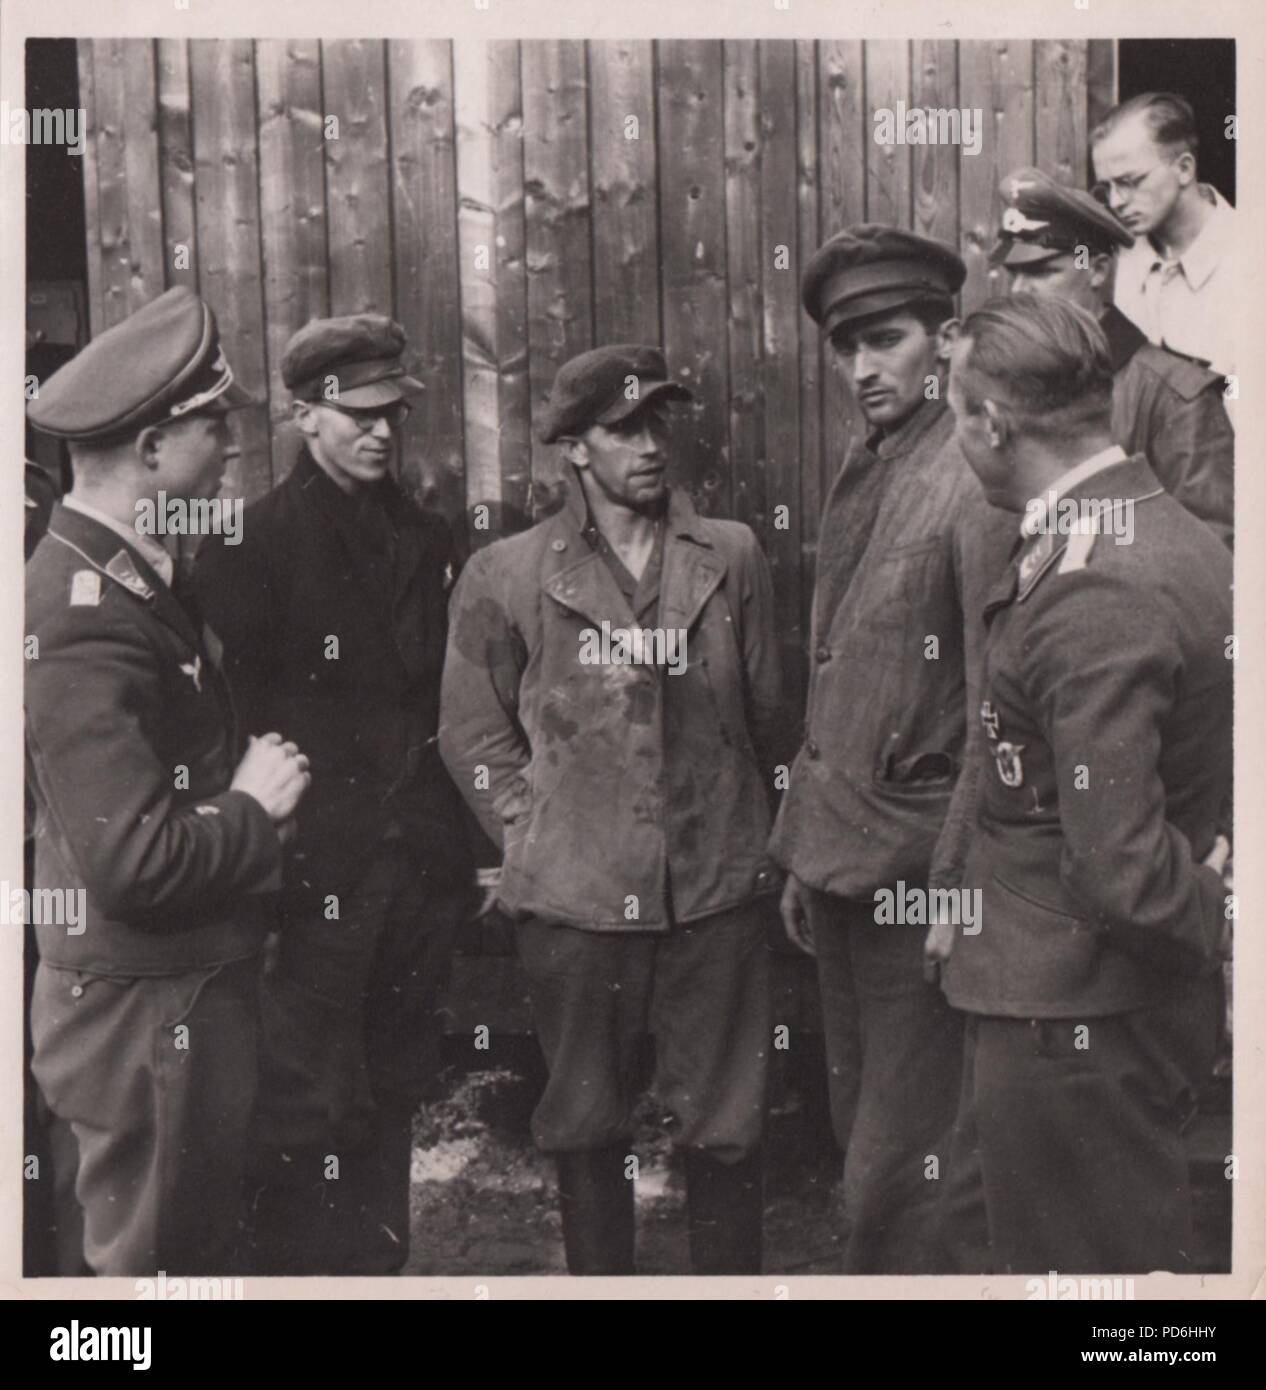 Imagen del álbum de fotos de Oscar Oberleutnant Müller del Kampfgeschwader 1: El 27 de junio de 1941 Junkers Ju 88A-5 V4+ON (Werk. Nr. 4296) de 5/KG 1 fue reportado perdidas durante una misión a Riga. Friedrich Unteroffizier Leibold (Air Gunner) fue muerto en acción, pero el resto de la tripulación, Piloto Oberfeldwebel Agosto Wiese (centro), Observador Feldwebel Martin apresurar (derecha) y Radio Operador Unteroffizier Armin Wuigk (con anteojos), regresó en ocho días. Aquí la tripulación aún están disfrazados con ropa de civil y hablar con los oficiales de la Luftwaffe. Foto de stock